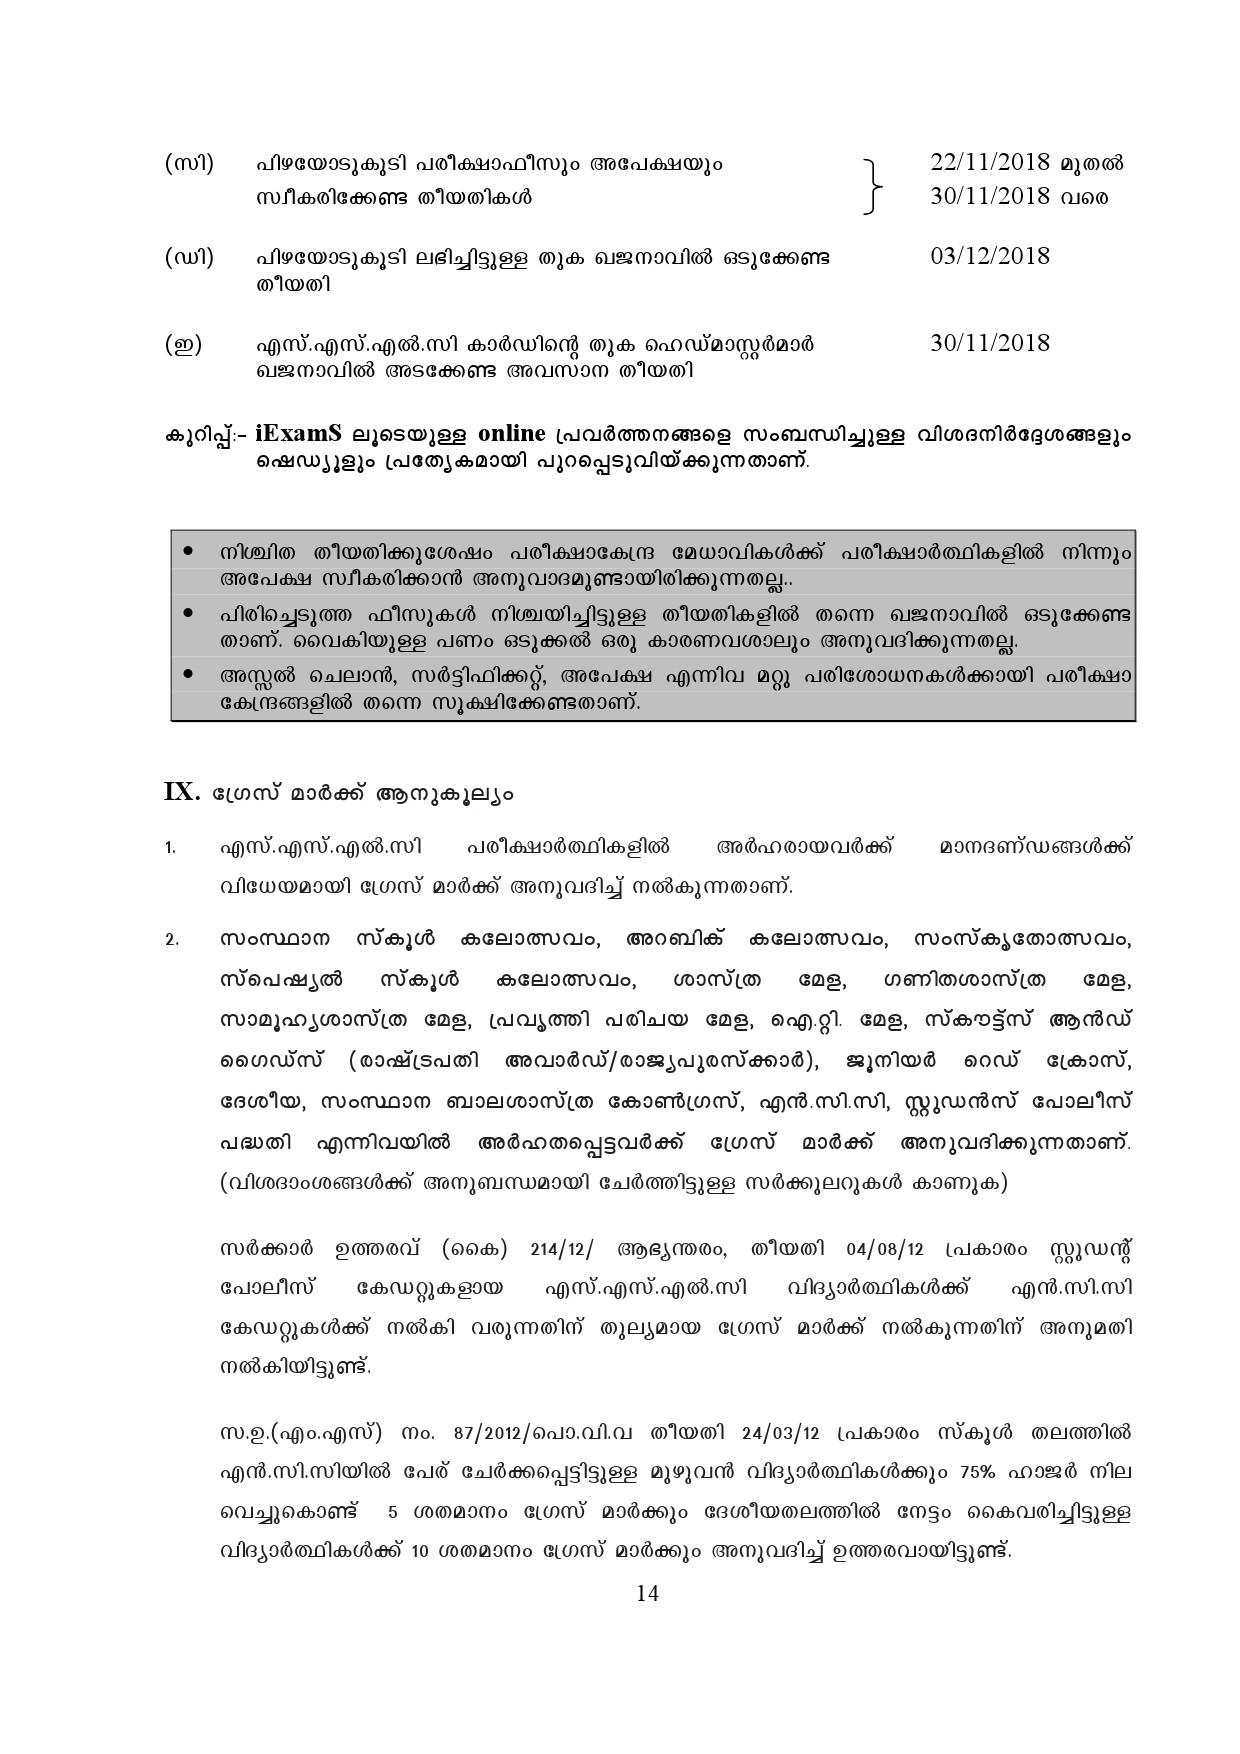 Kerala SSLC Exam Result 2019 - Notification Image 14